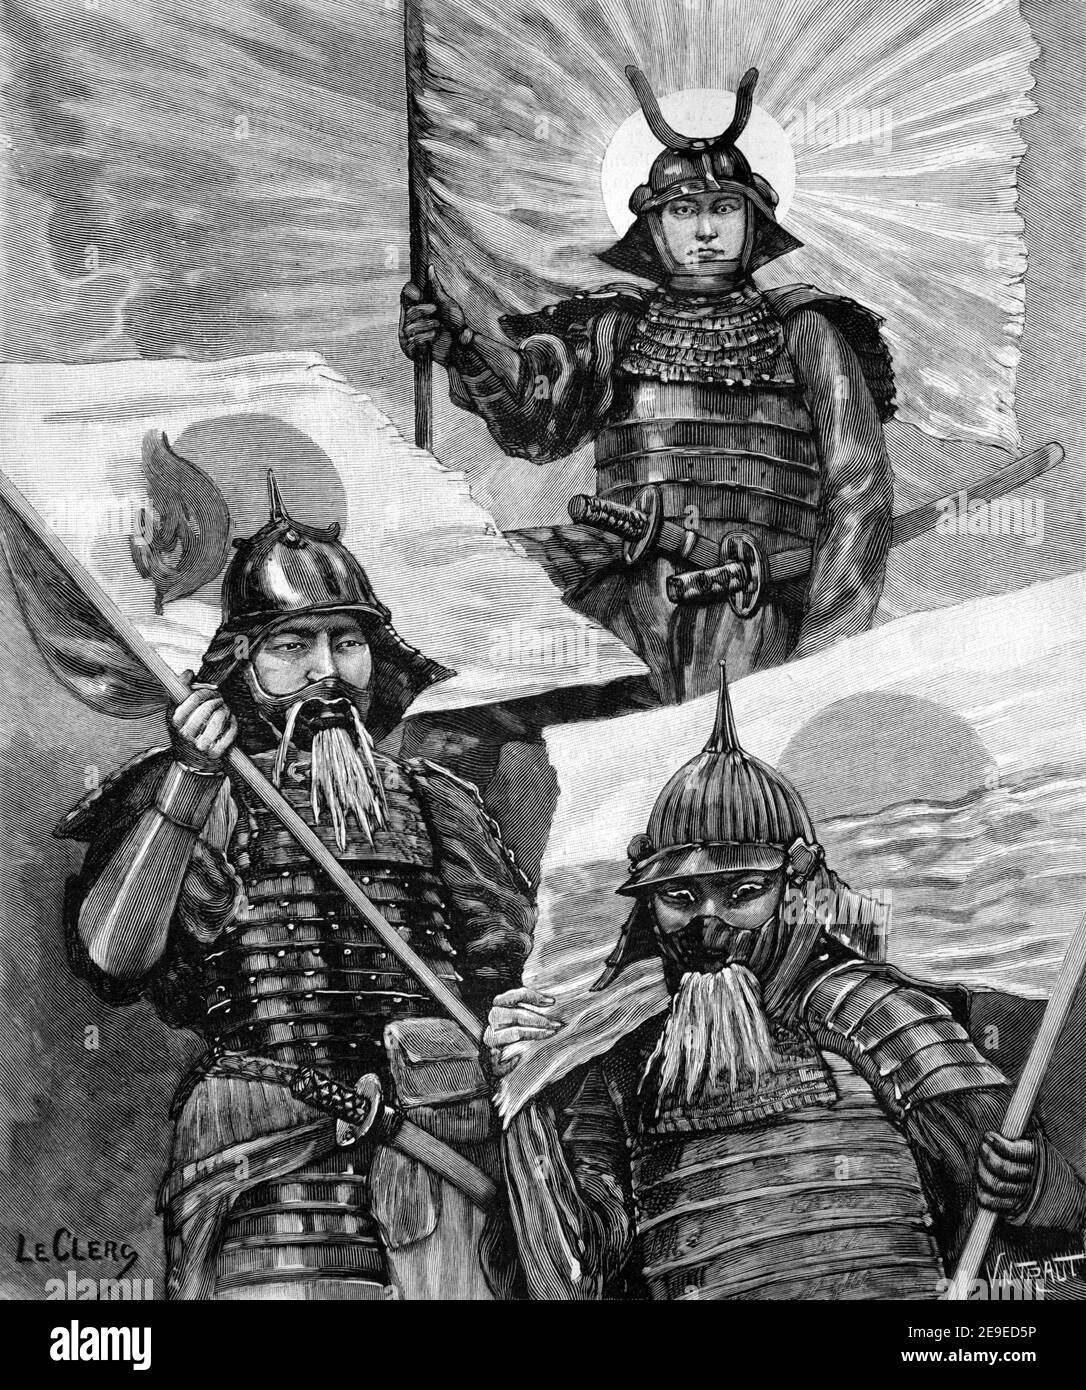 Sun Nations China Korea & Japan Armeen oder Soldaten gekleidet In Rüstung oder Militär Uniformen Asien 1898 Vintage Illustration oder Gravur Stockfoto